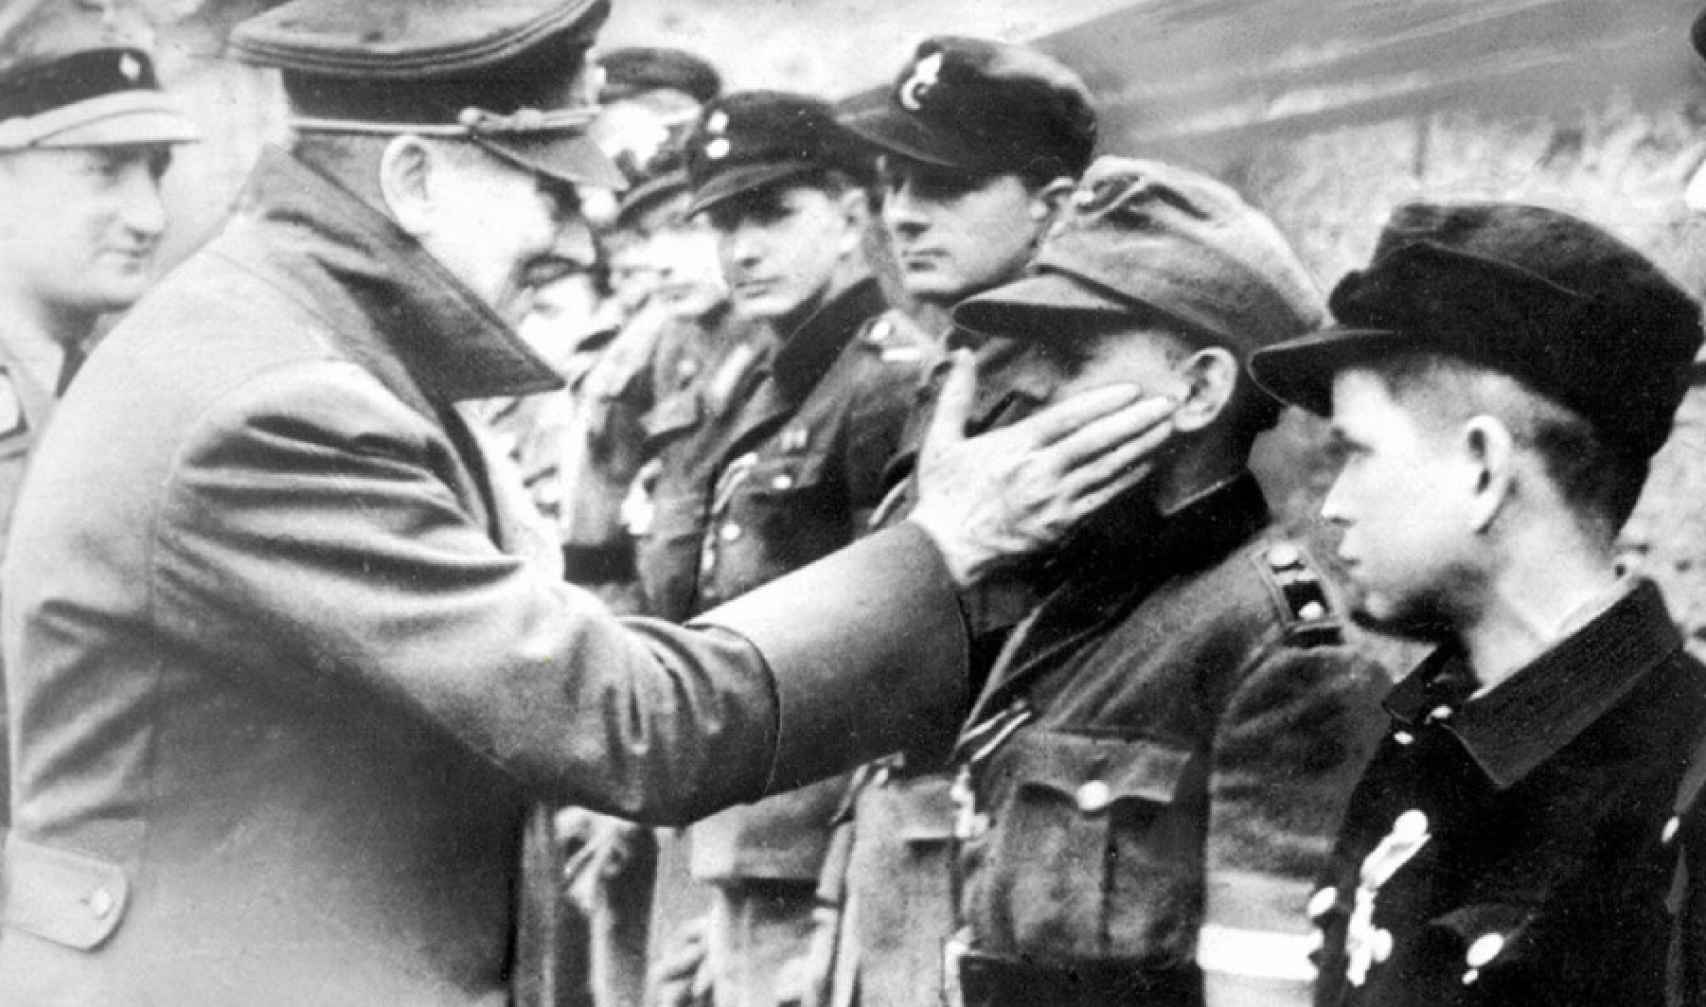 Una de las últimas imágenes de Hitler en vida: fue tomada el 20 de abril, el día de su cumpleaños, y saluda a un grupo de miembros de las Juventudes Hitlerianas.